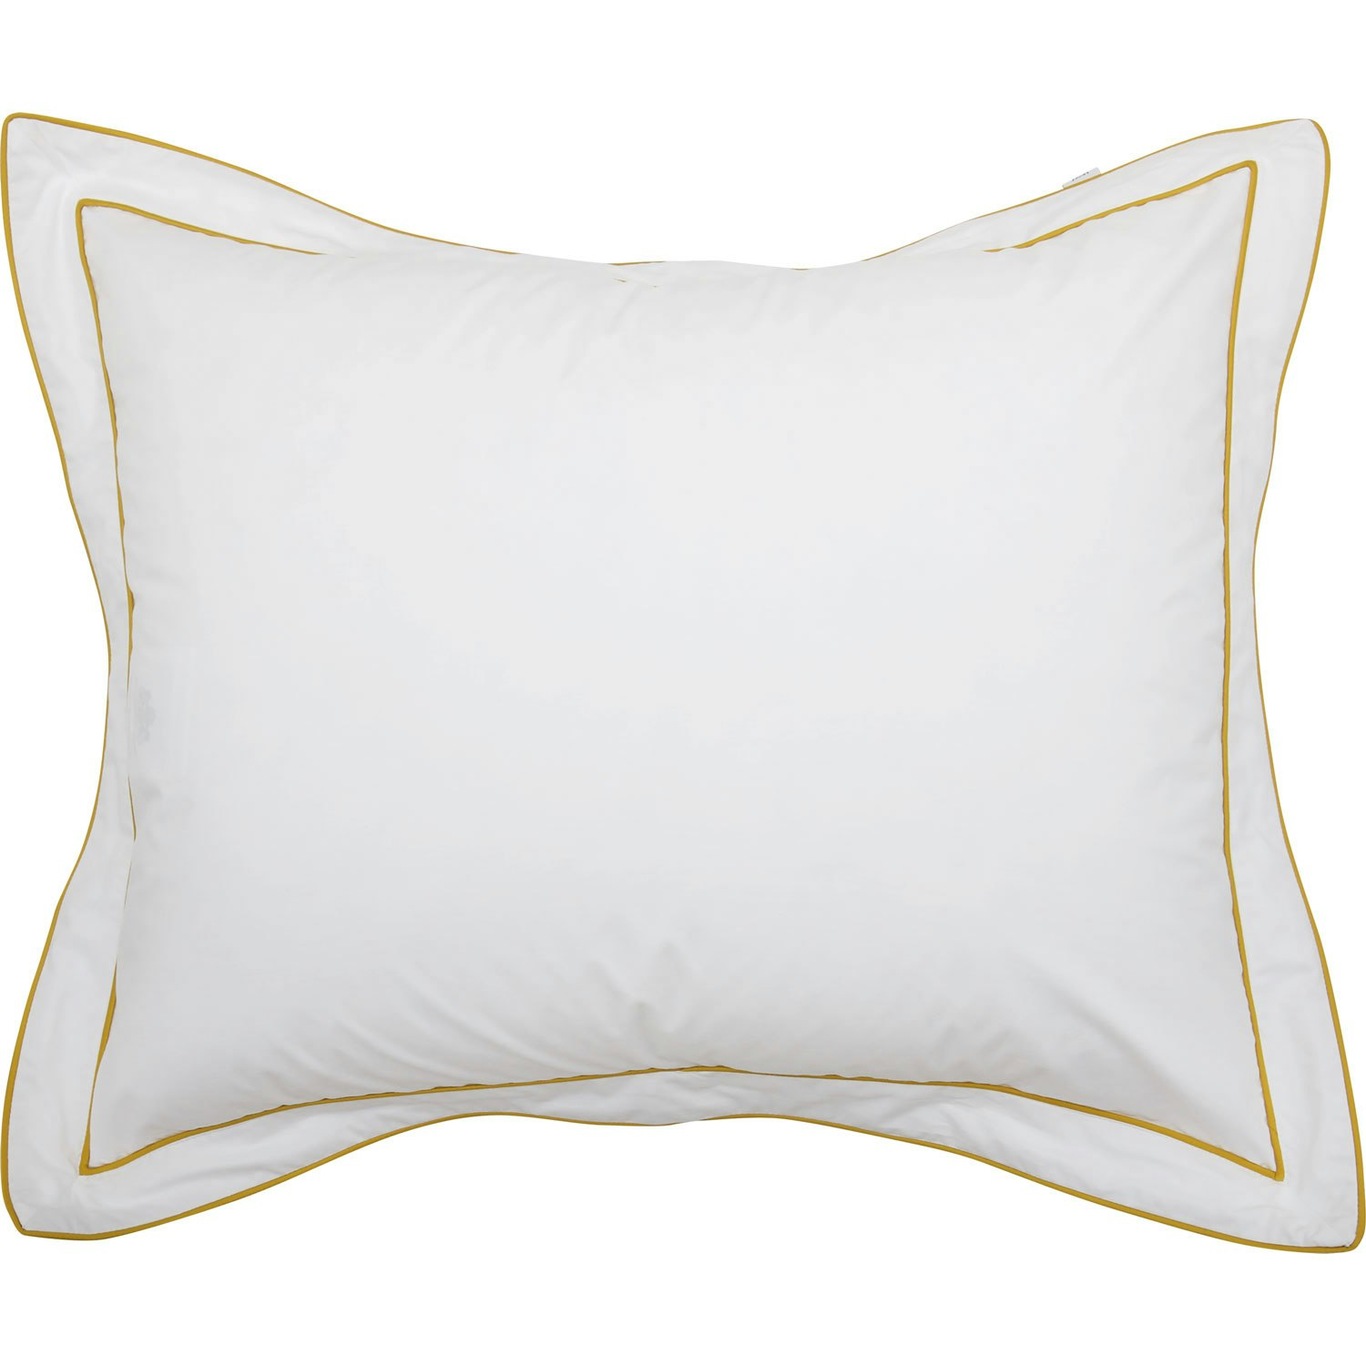 Allegro Pillowcase Eco Yellow, 50x60 cm